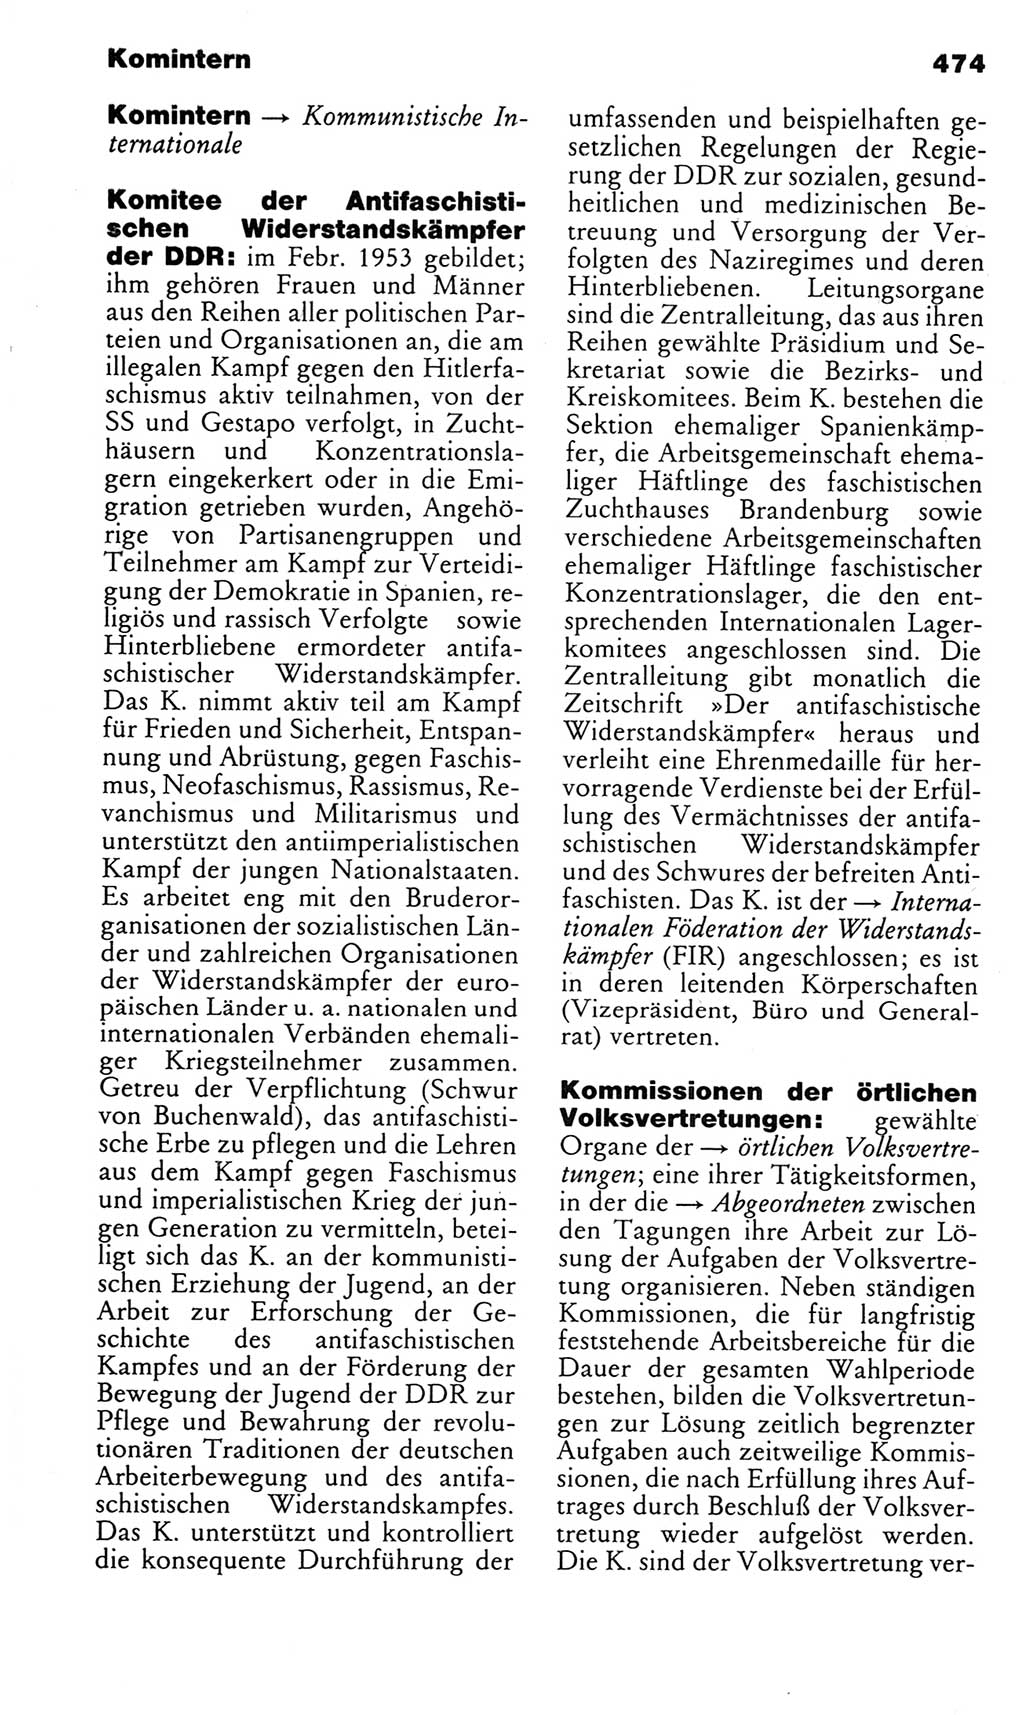 Kleines politisches Wörterbuch [Deutsche Demokratische Republik (DDR)] 1983, Seite 474 (Kl. pol. Wb. DDR 1983, S. 474)